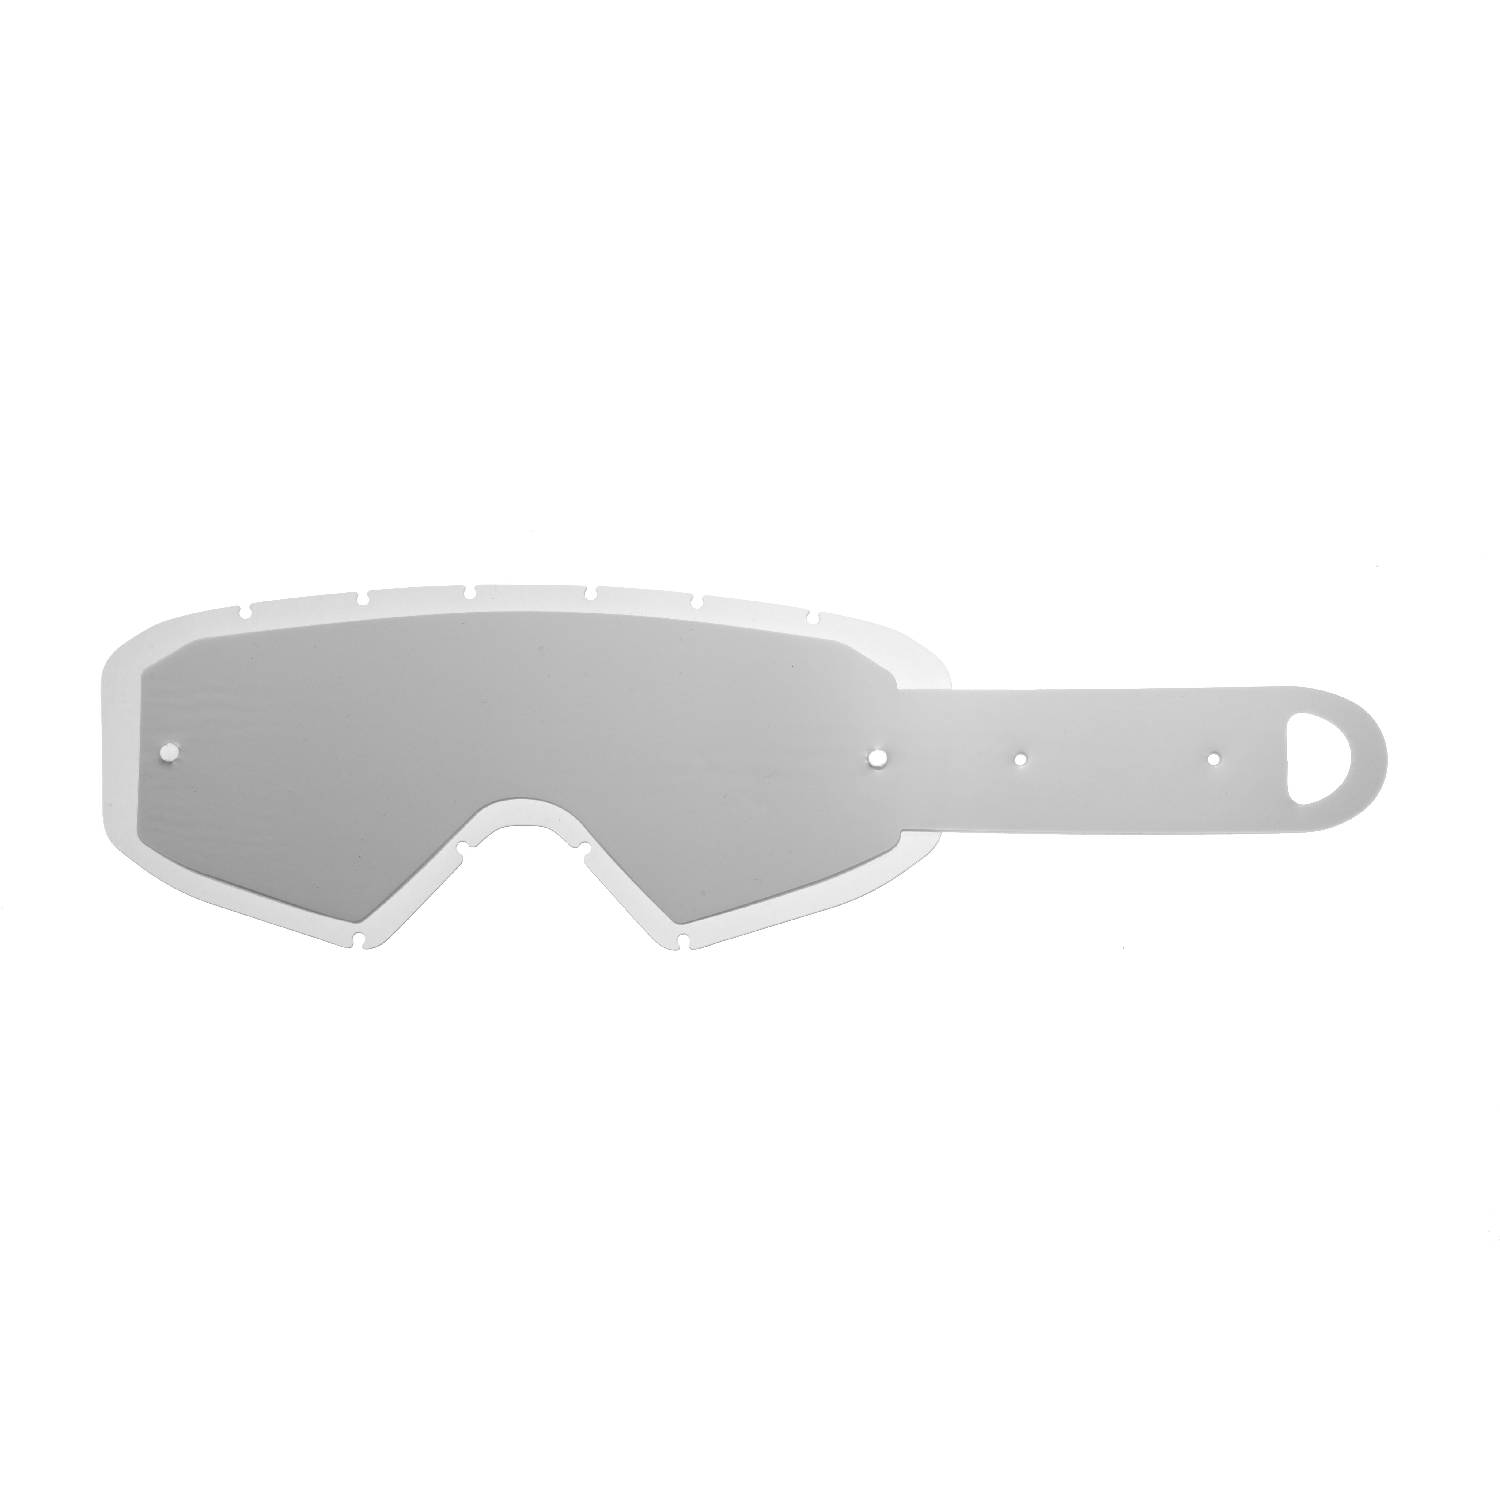 Lente trasparente + 10 Strappi (Combo) compatibile per occhiale/maschera cross Ethen Zerocinque Primis / R / Ares / Ares Pluma